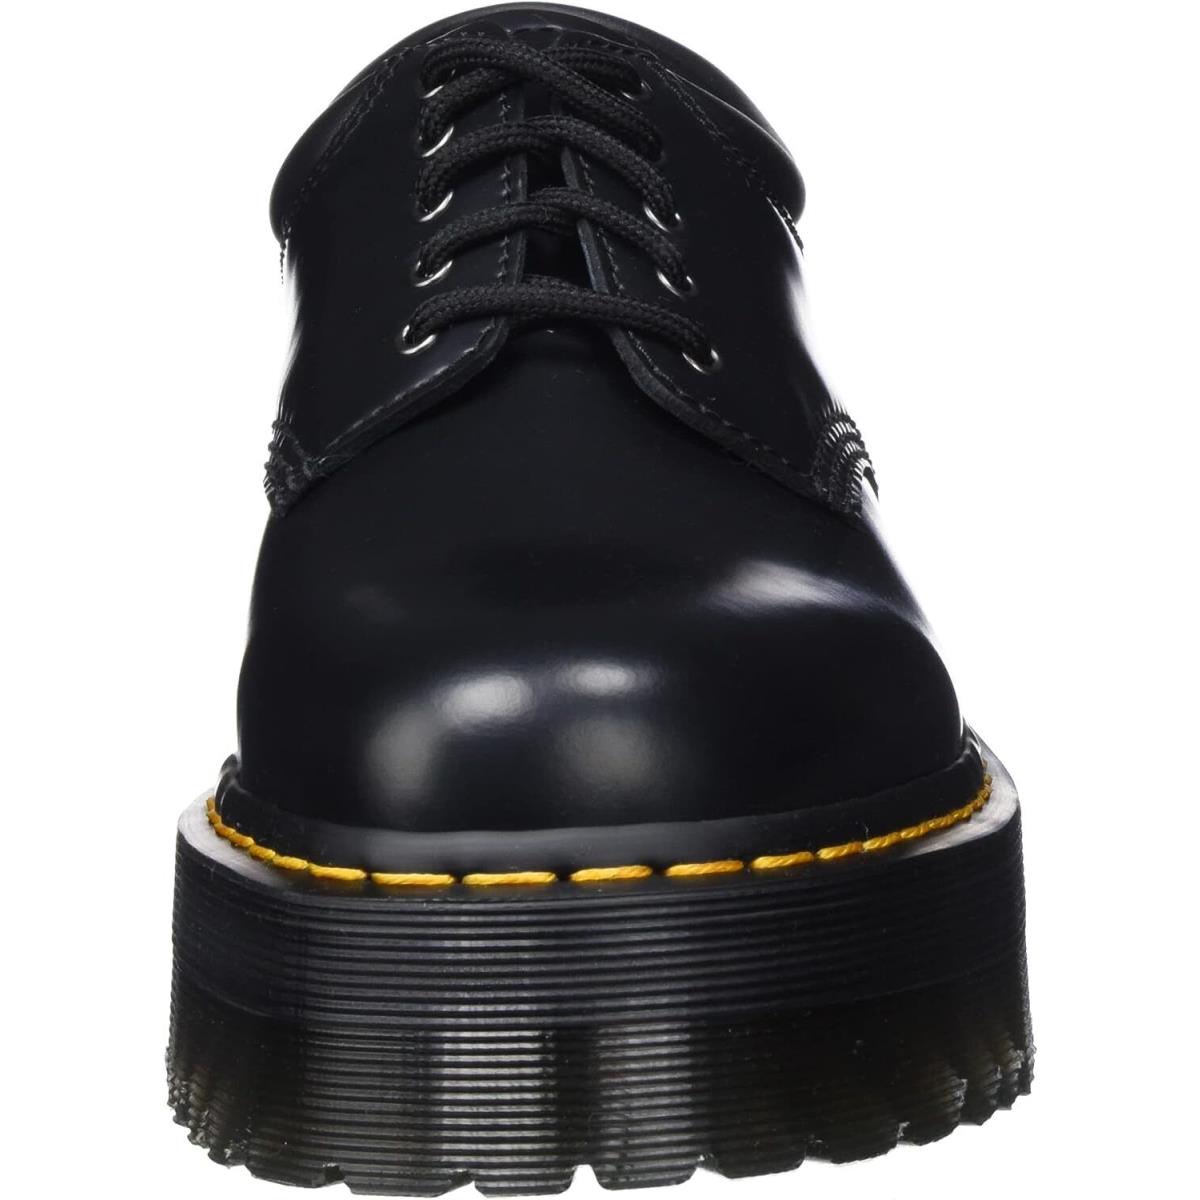 Dr. Martens 8053 Quad Shoes Black Polished